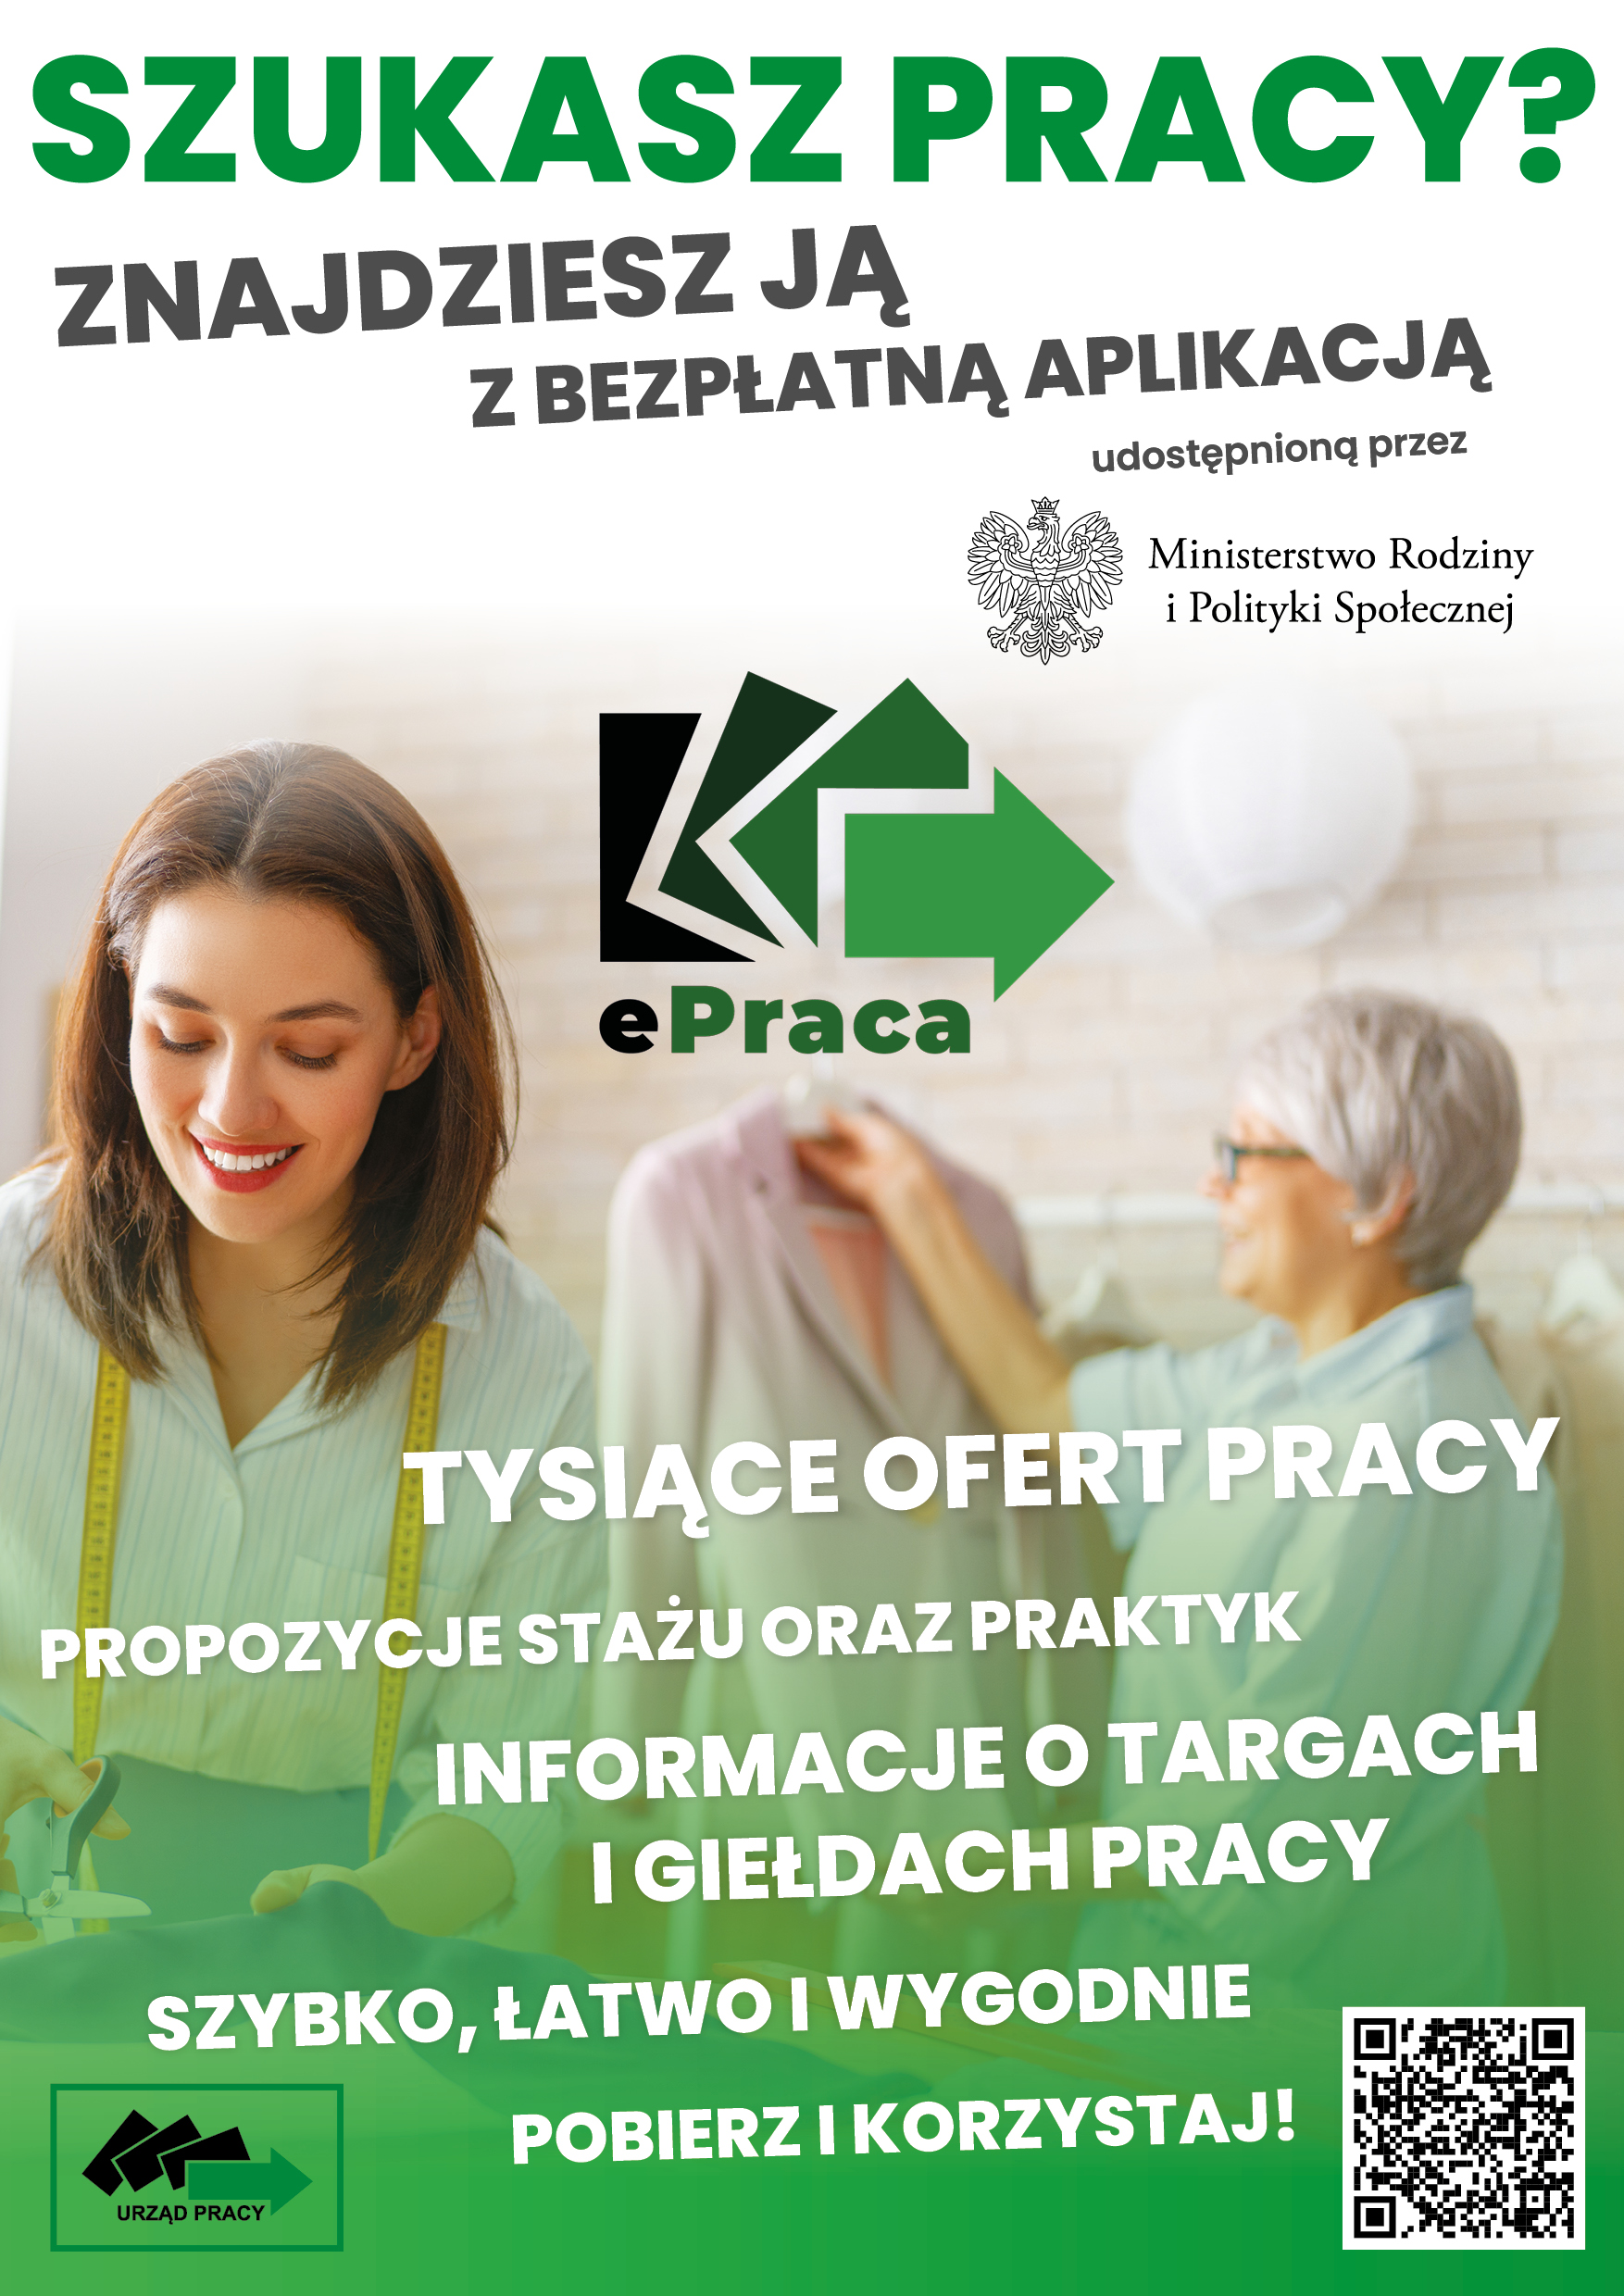 Plakat informujący o aplikacji mobilnej ePraca.